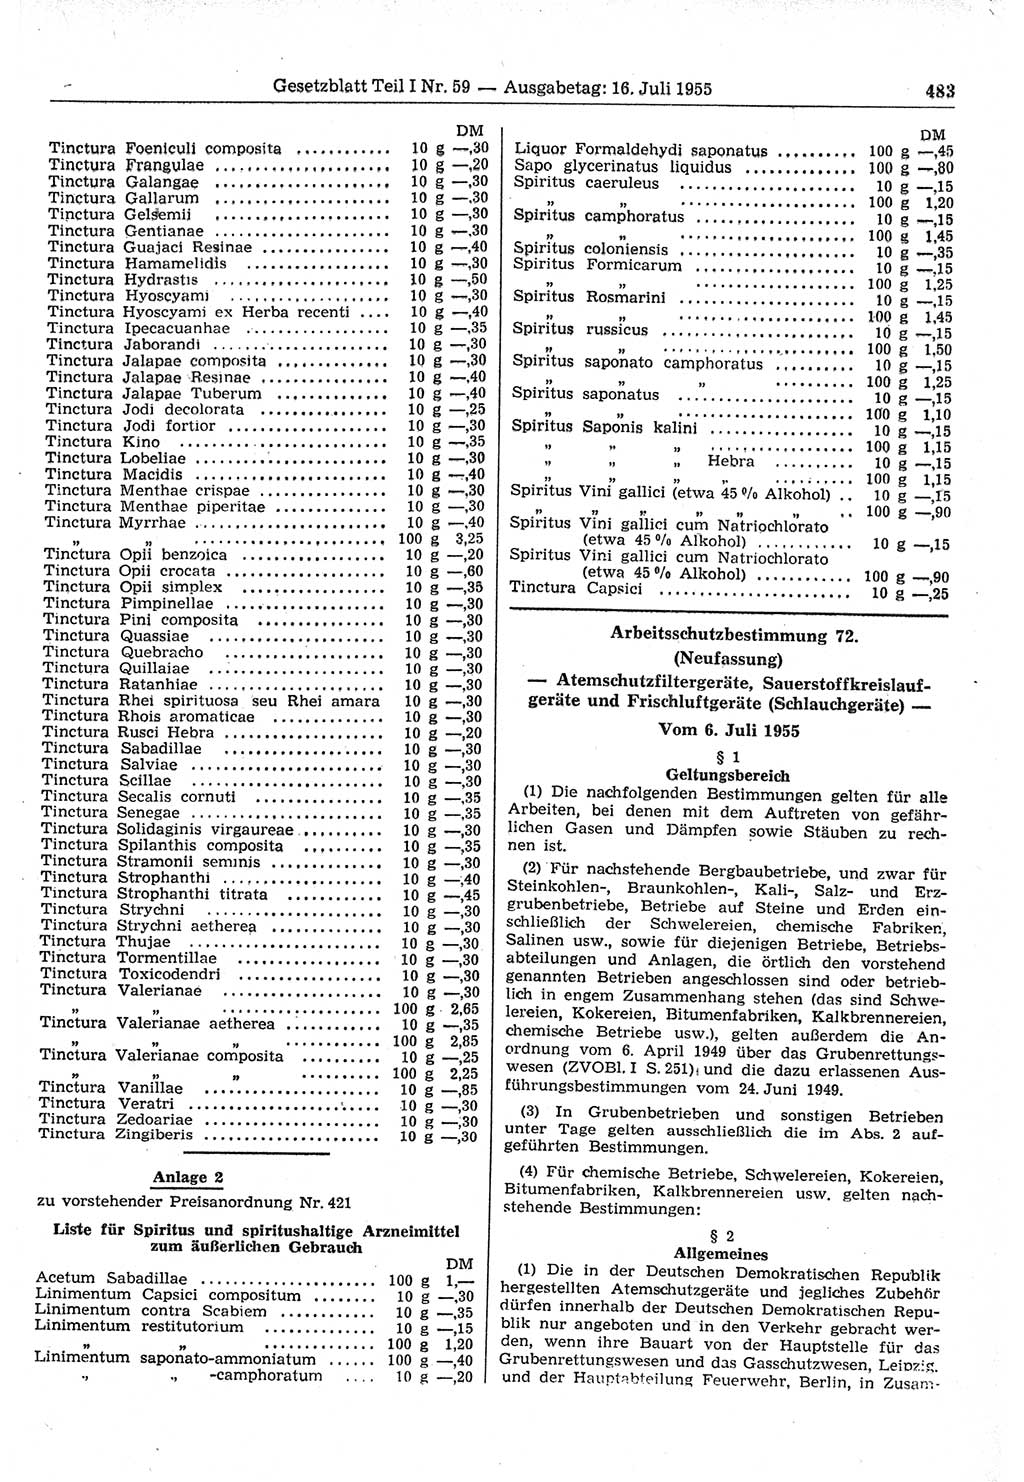 Gesetzblatt (GBl.) der Deutschen Demokratischen Republik (DDR) Teil Ⅰ 1955, Seite 483 (GBl. DDR Ⅰ 1955, S. 483)